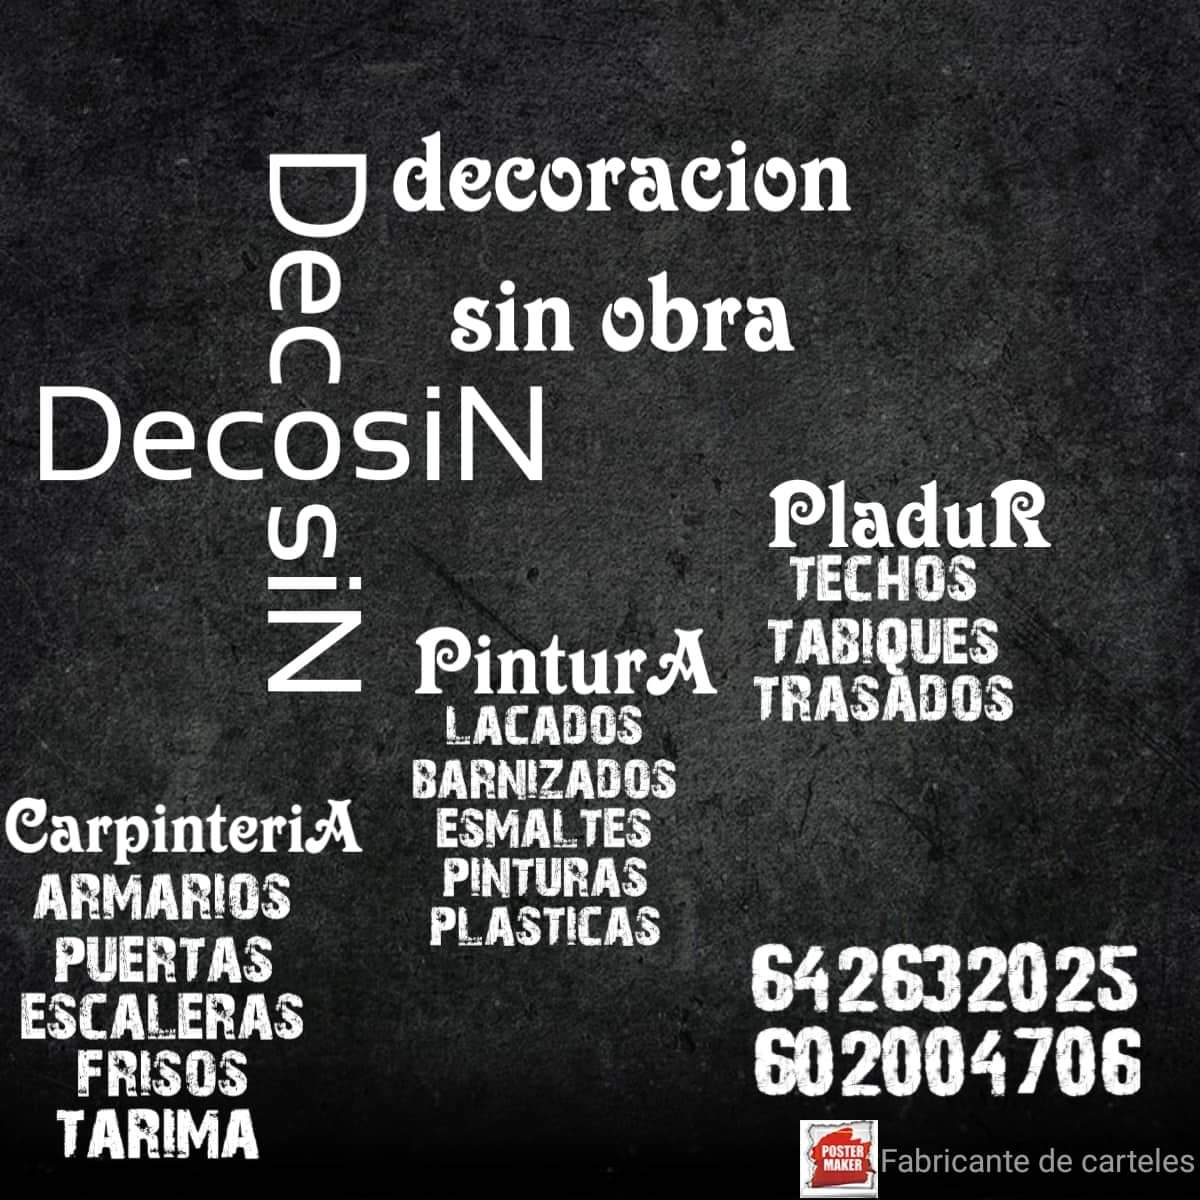 Decosin